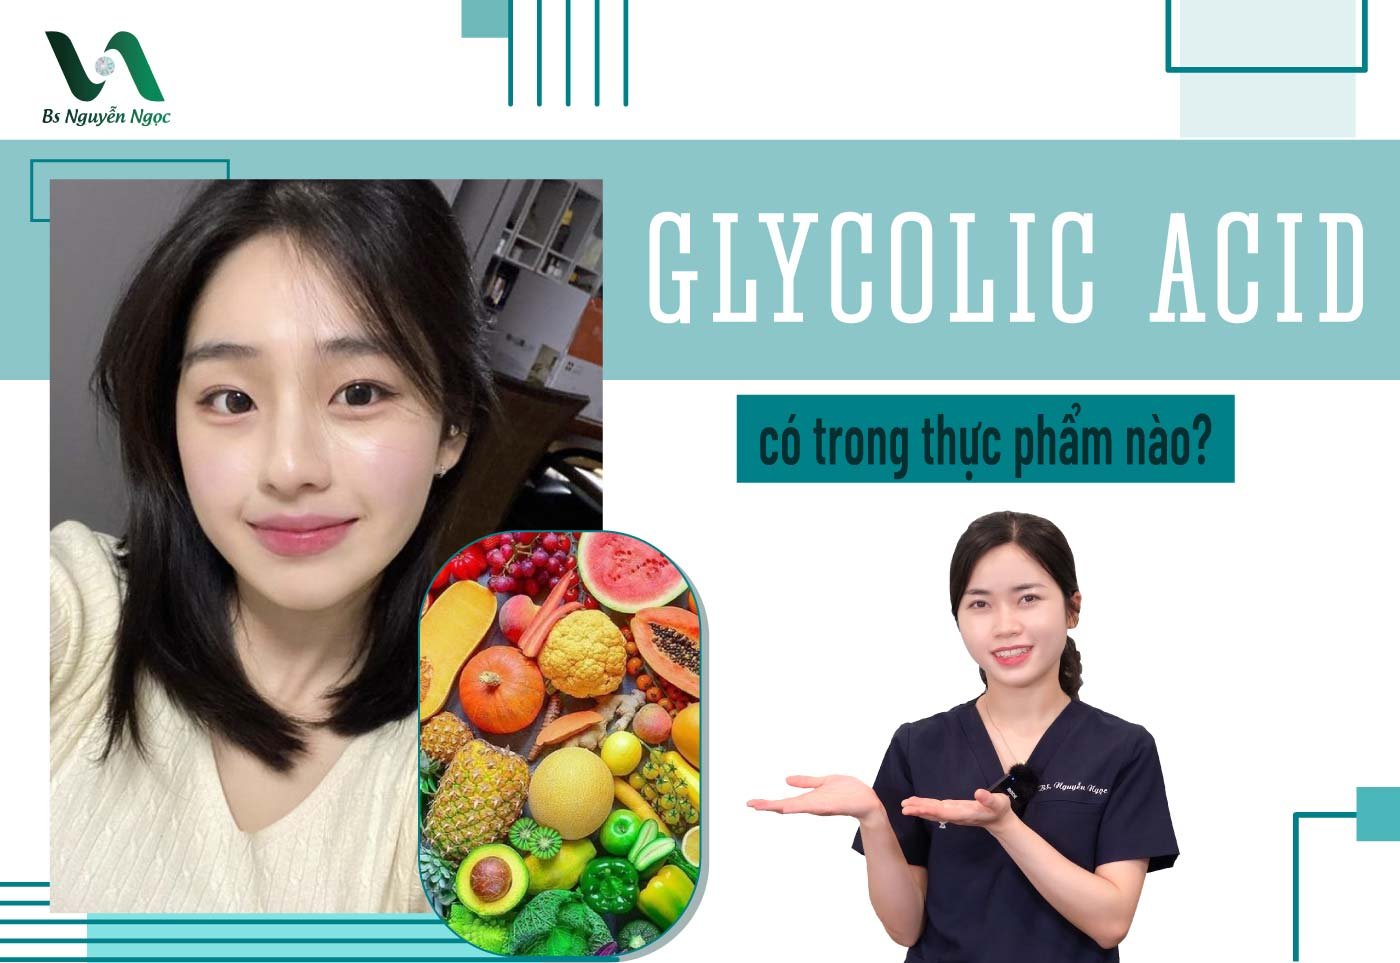 Glycolic acid có trong thực phẩm nào?